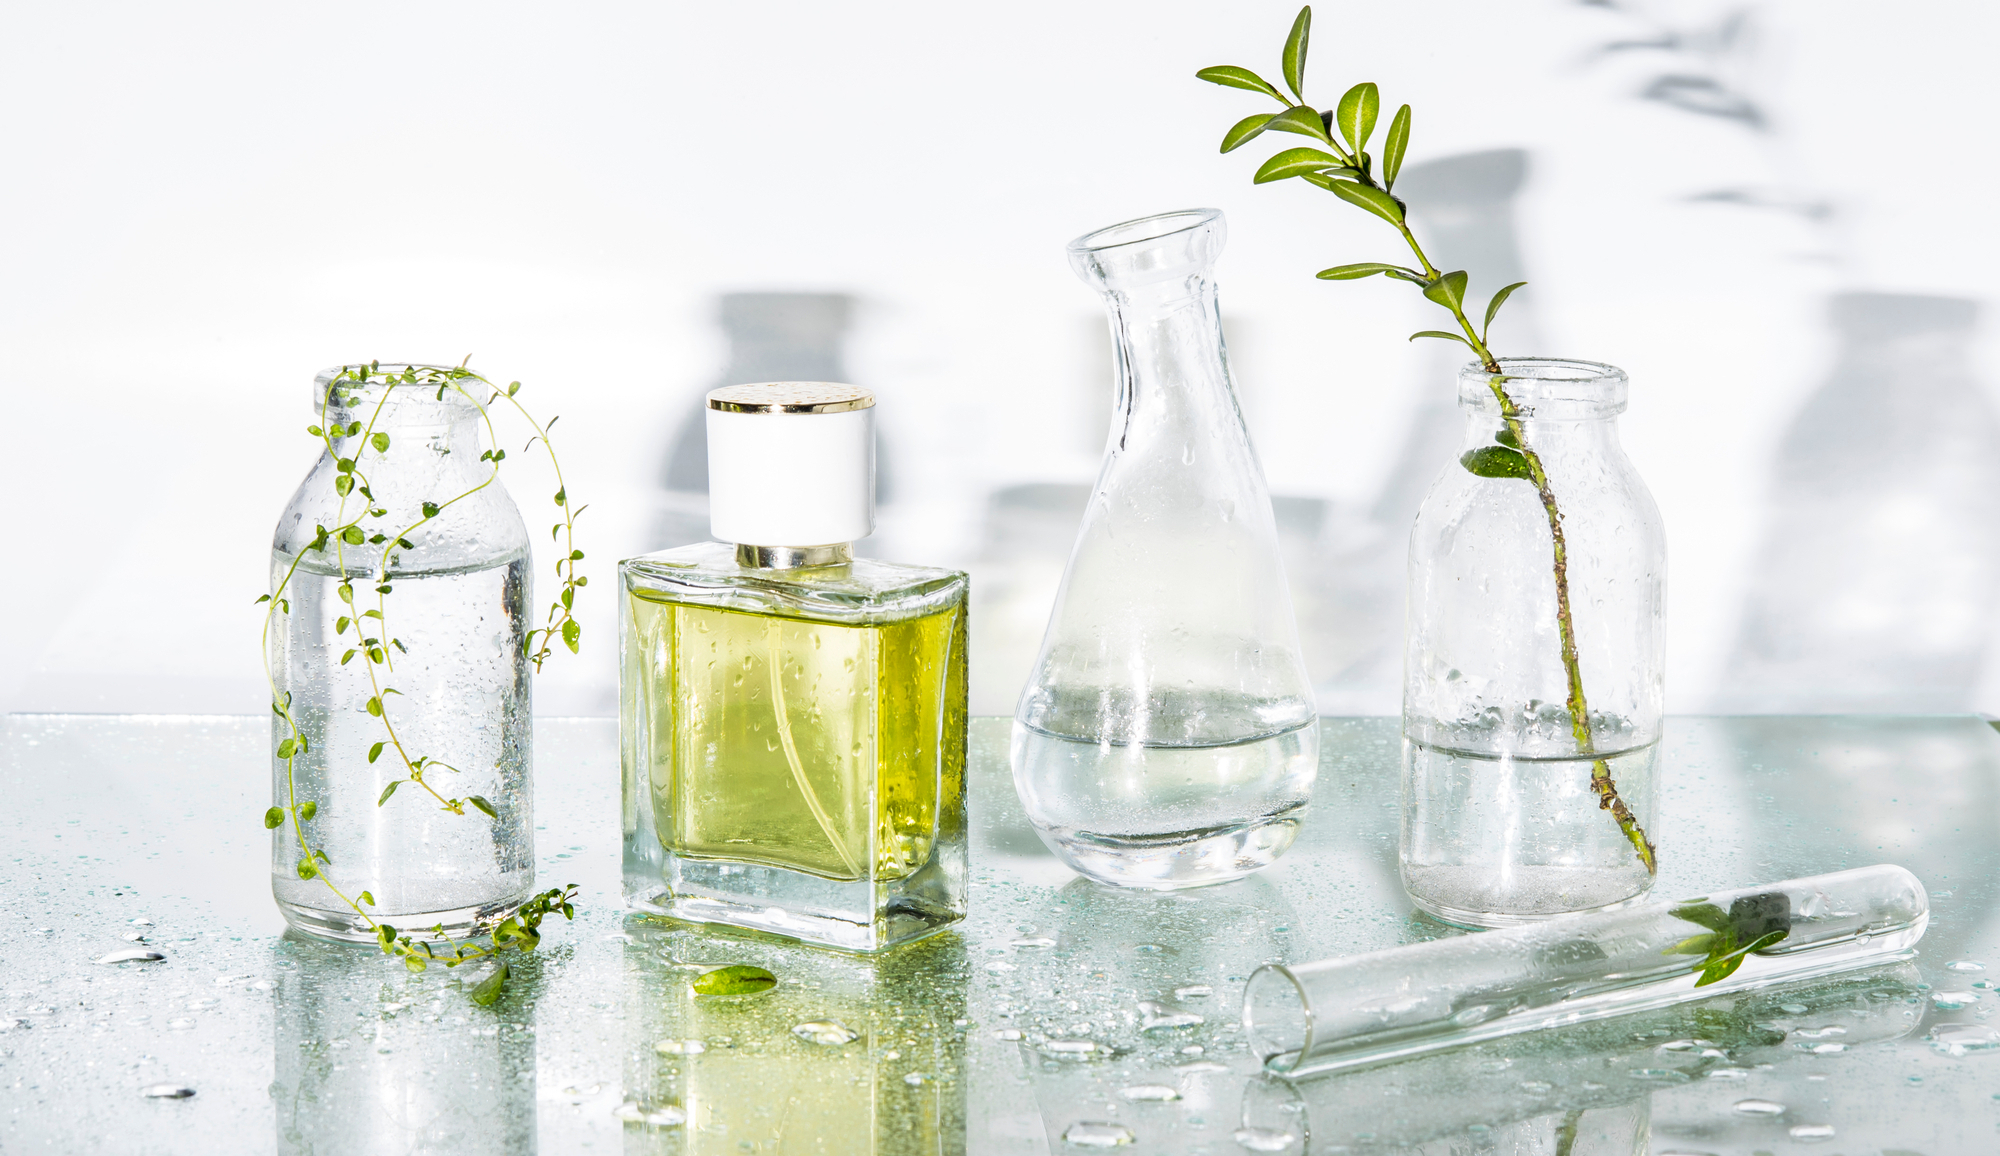 Leer más: ¿Conoces las familias olfativas de los perfumes?